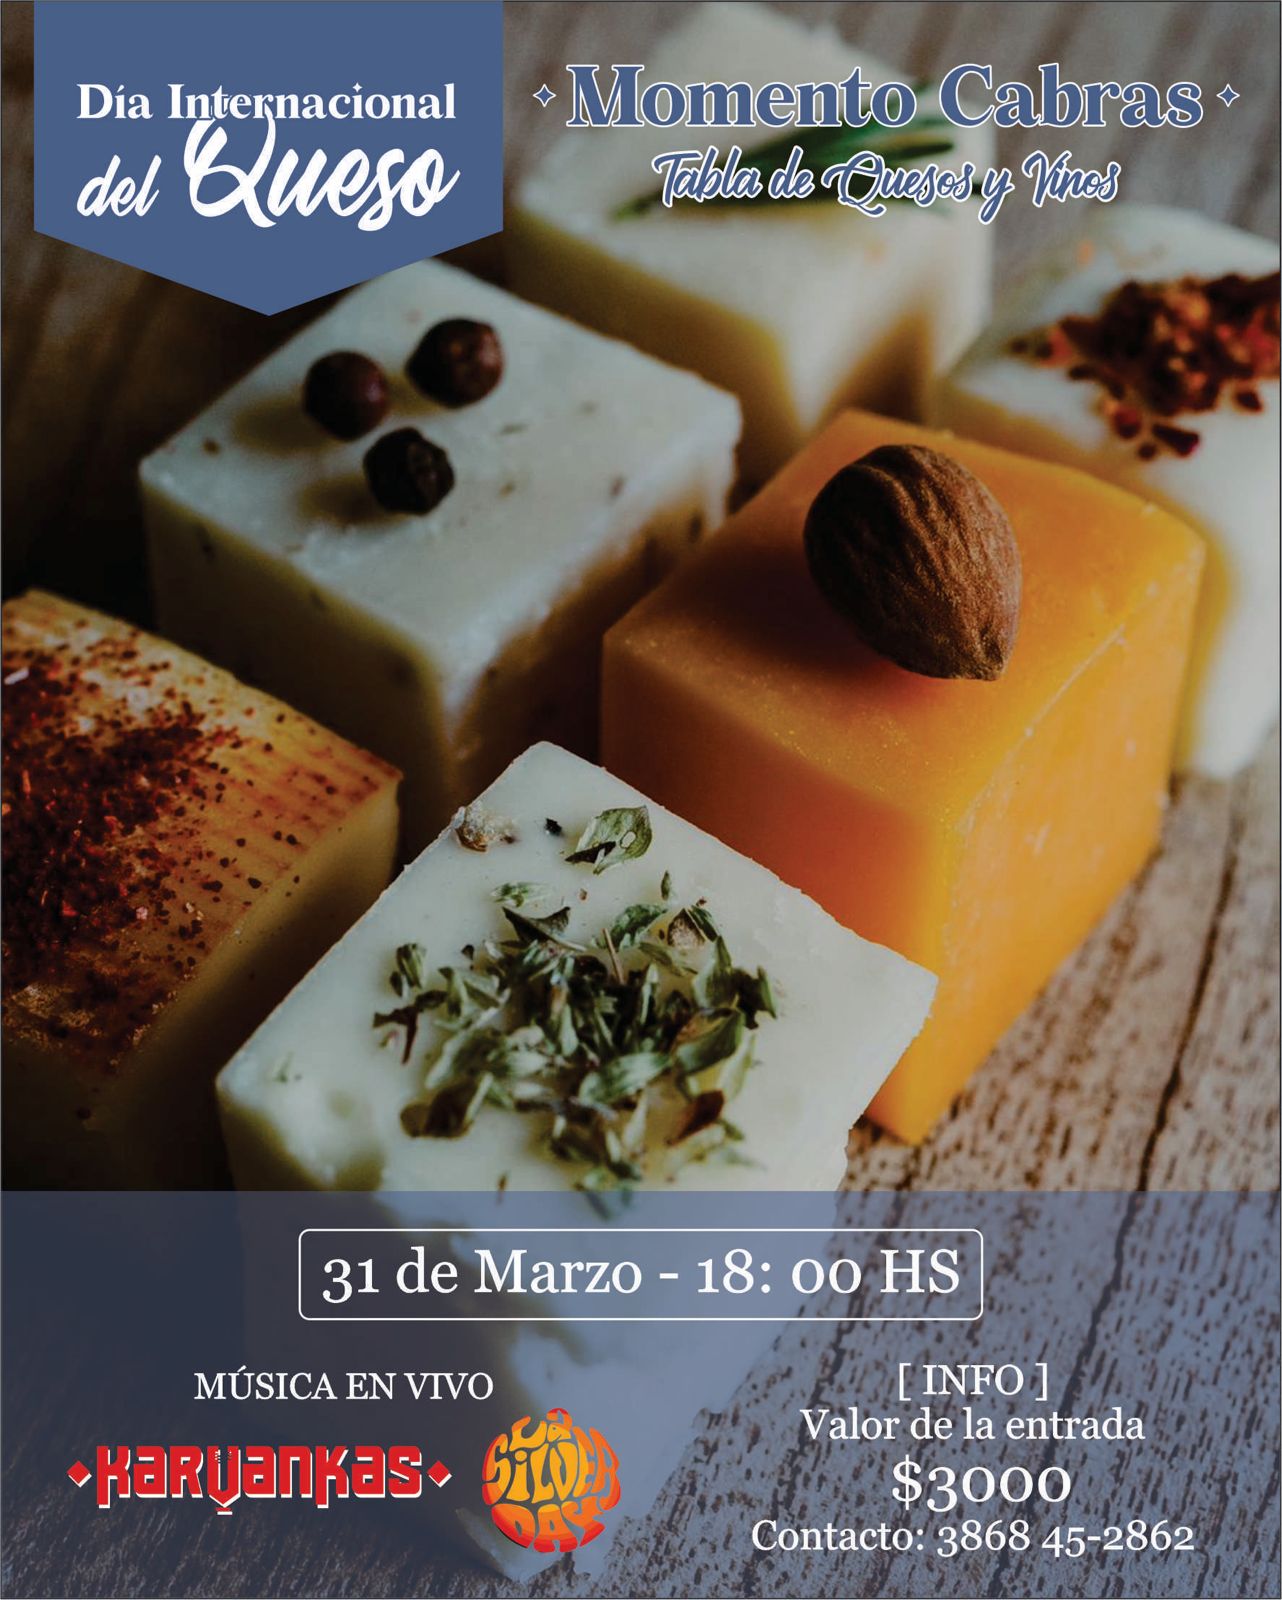 Dia internacional del queso en Cabras de Cafayate